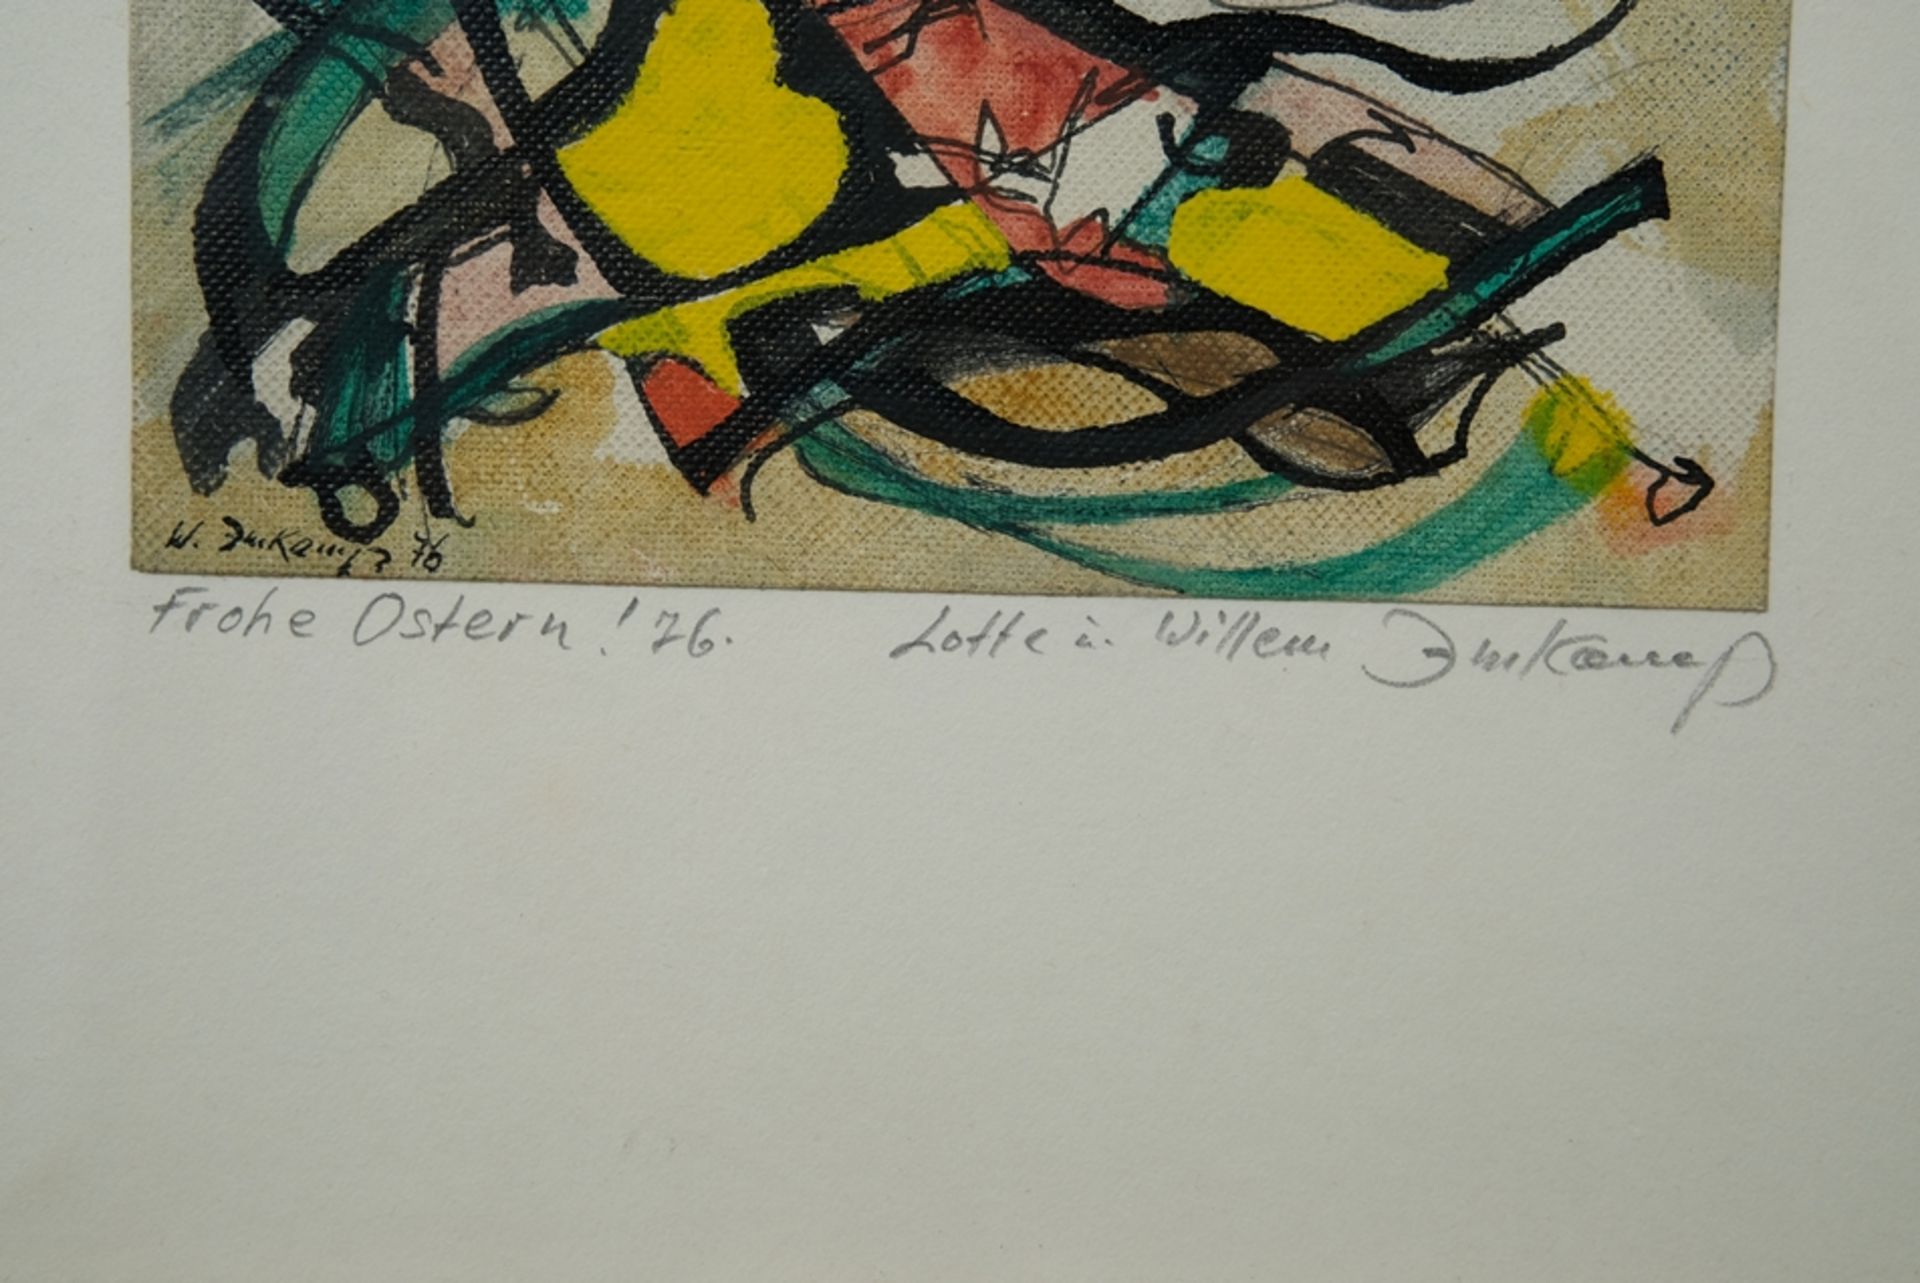 Imkamp, Wilhelm (1906-1990) "Frohe Ostern '76", Öl auf Leinenstrukturpapier. Abstrakte Komposition  - Bild 3 aus 4